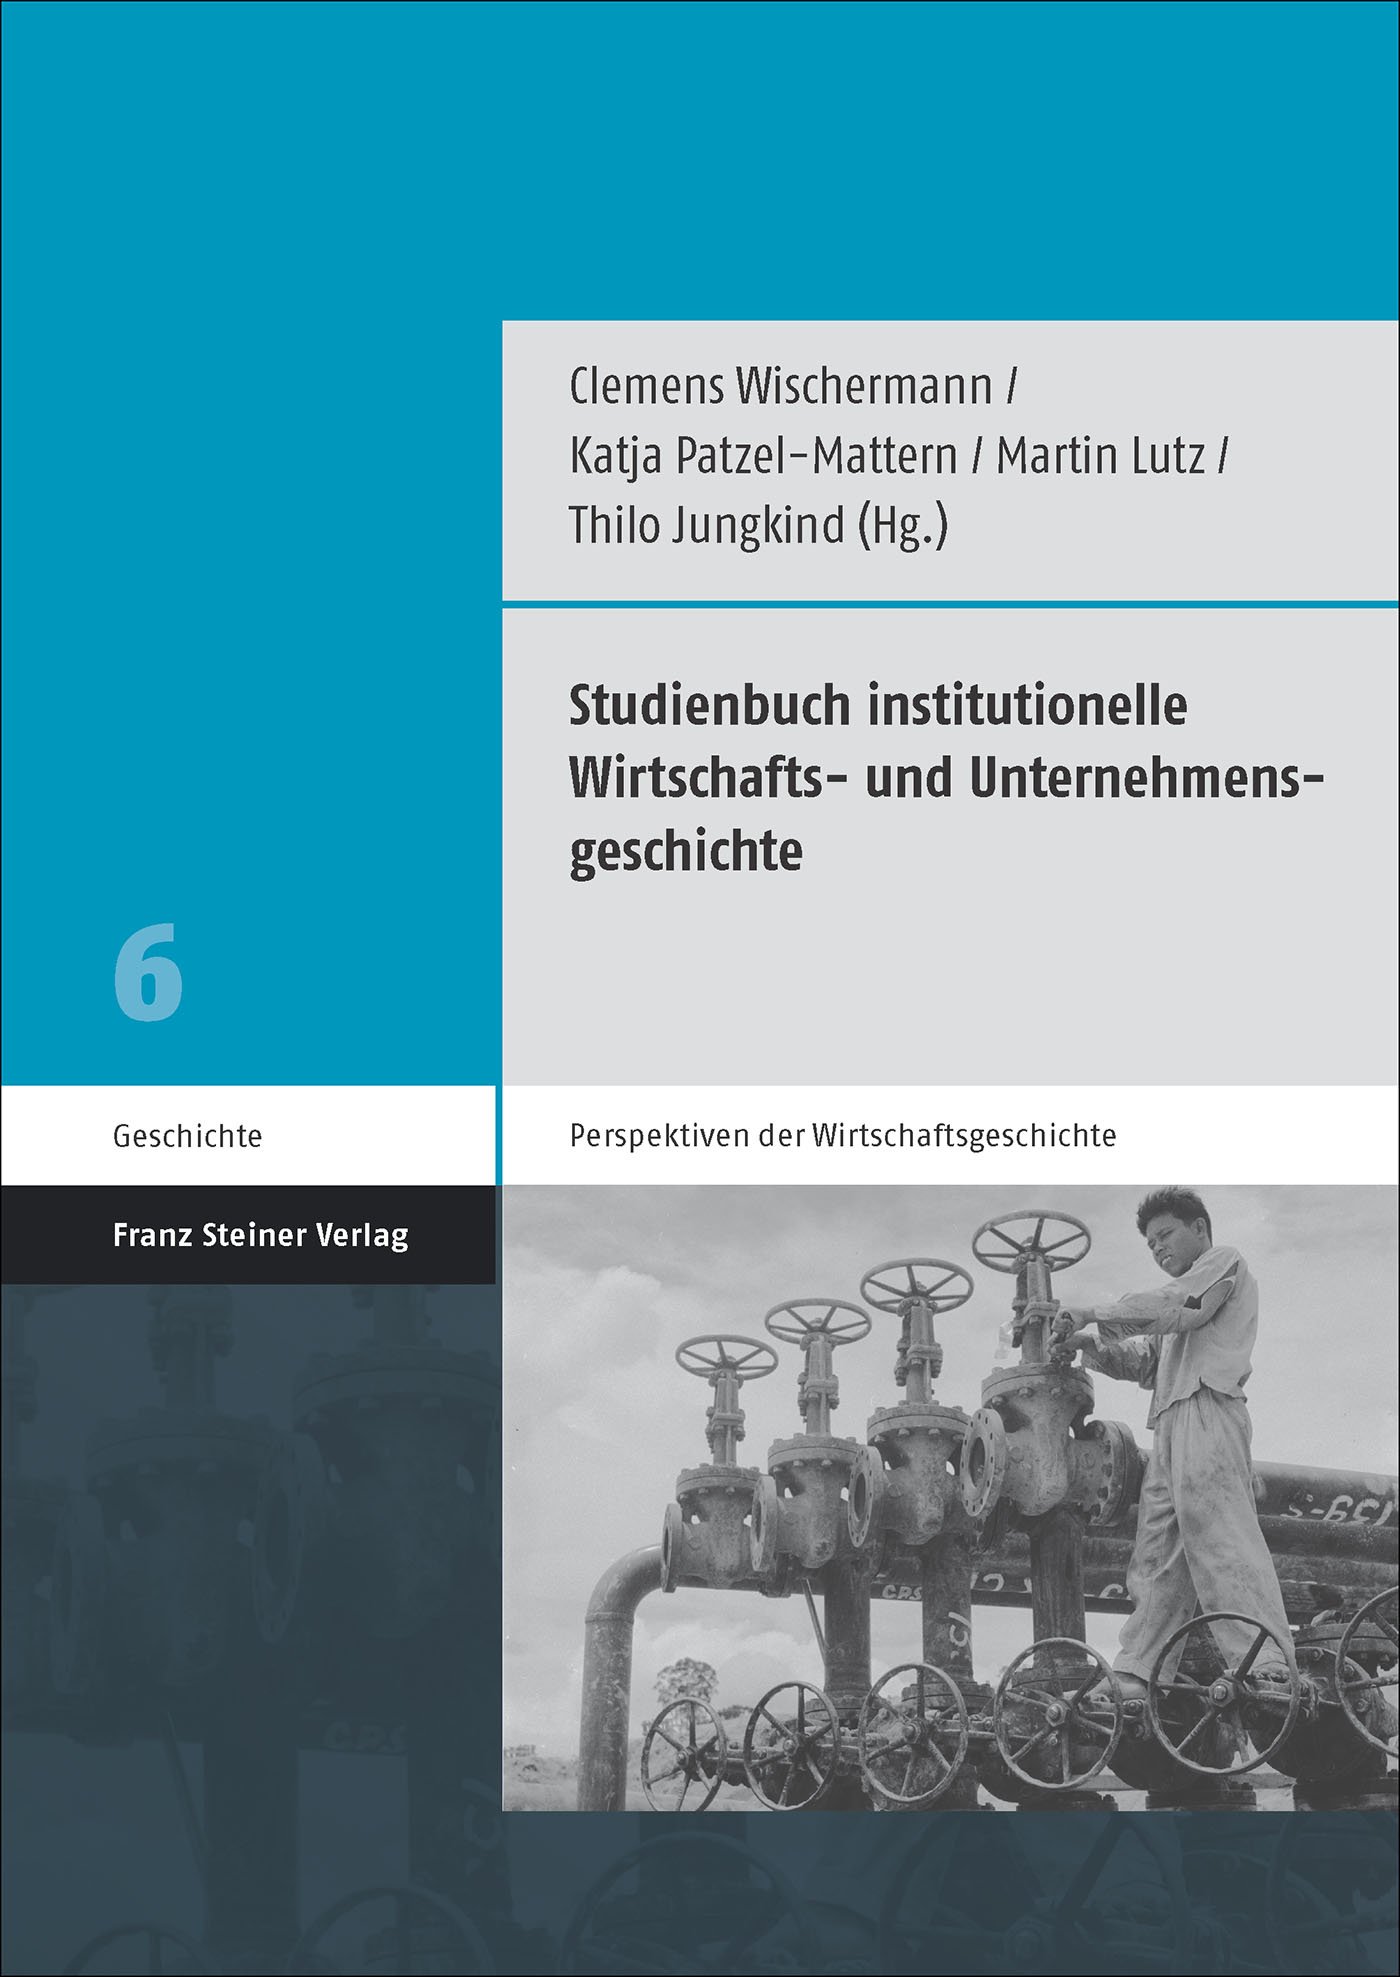 Studienbuch institutionelle Wirtschafts- und Unternehmensgeschichte